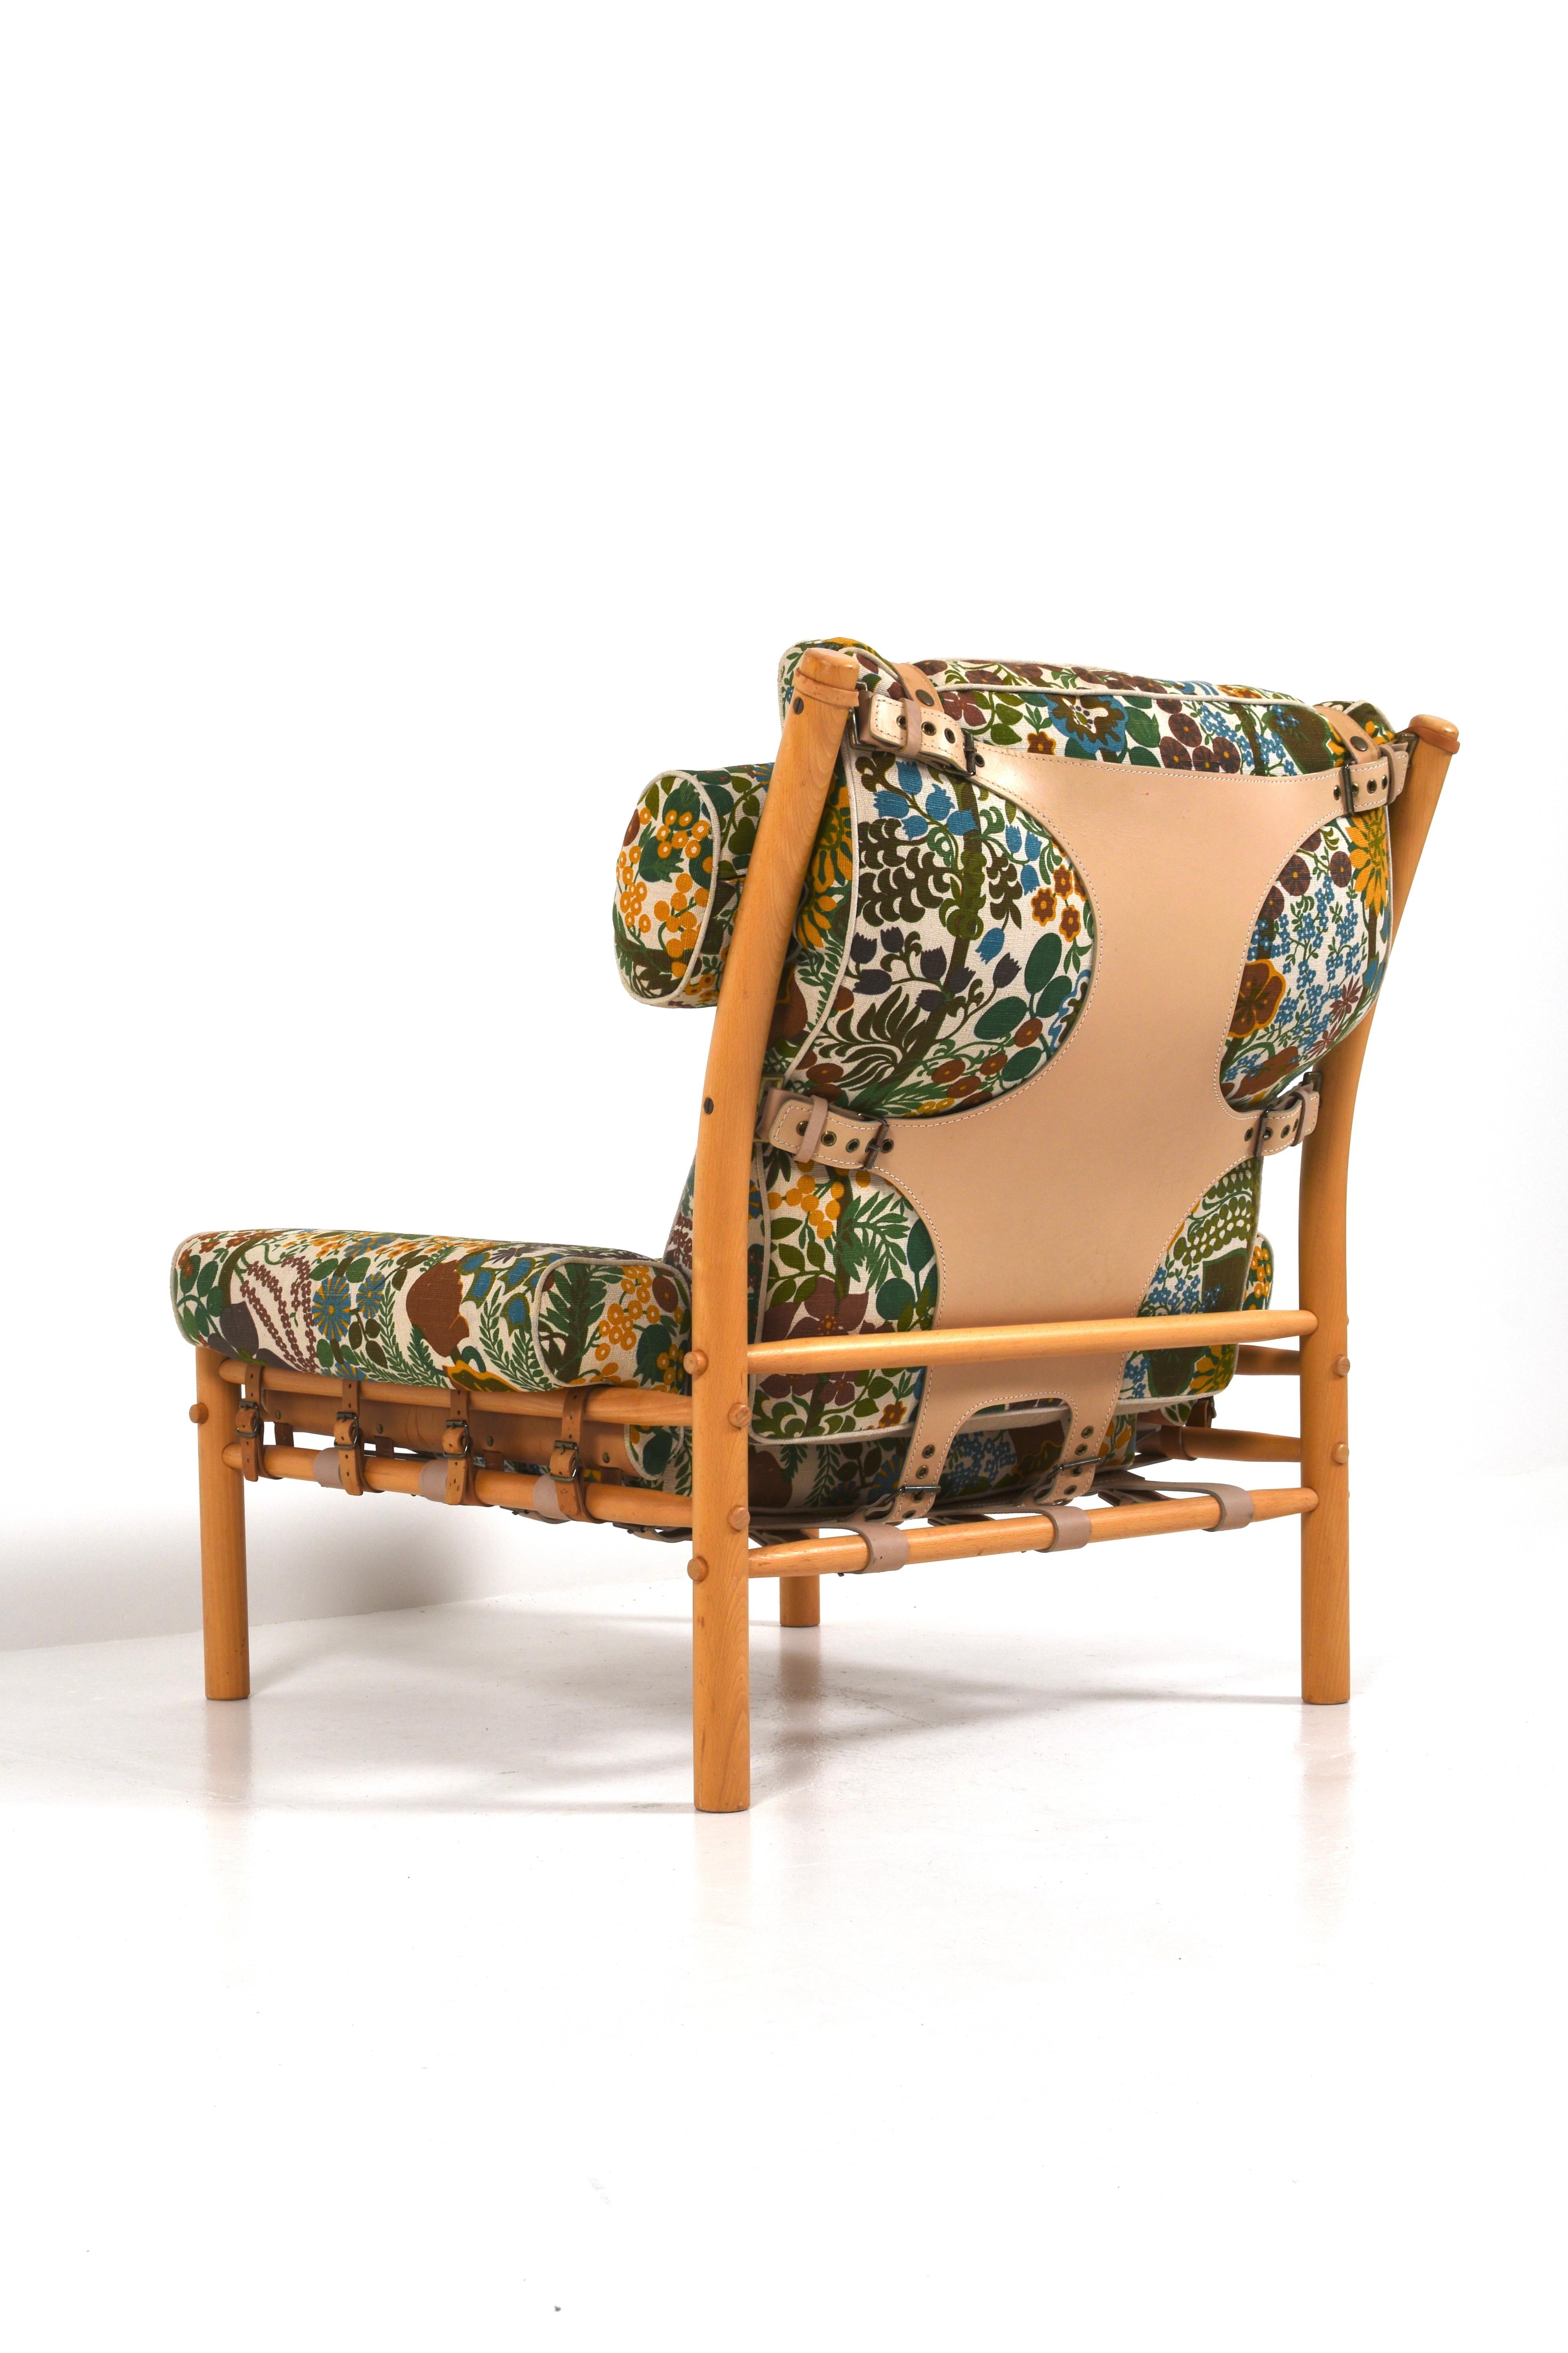 Arne Norell war ein bekannter schwedischer Möbeldesigner, der für seine schlichten und eleganten Entwürfe bekannt war. Seine Möbel zeichnen sich oft durch hohe Qualität, die Verwendung natürlicher Materialien und eine zeitlose Ästhetik aus.

Der